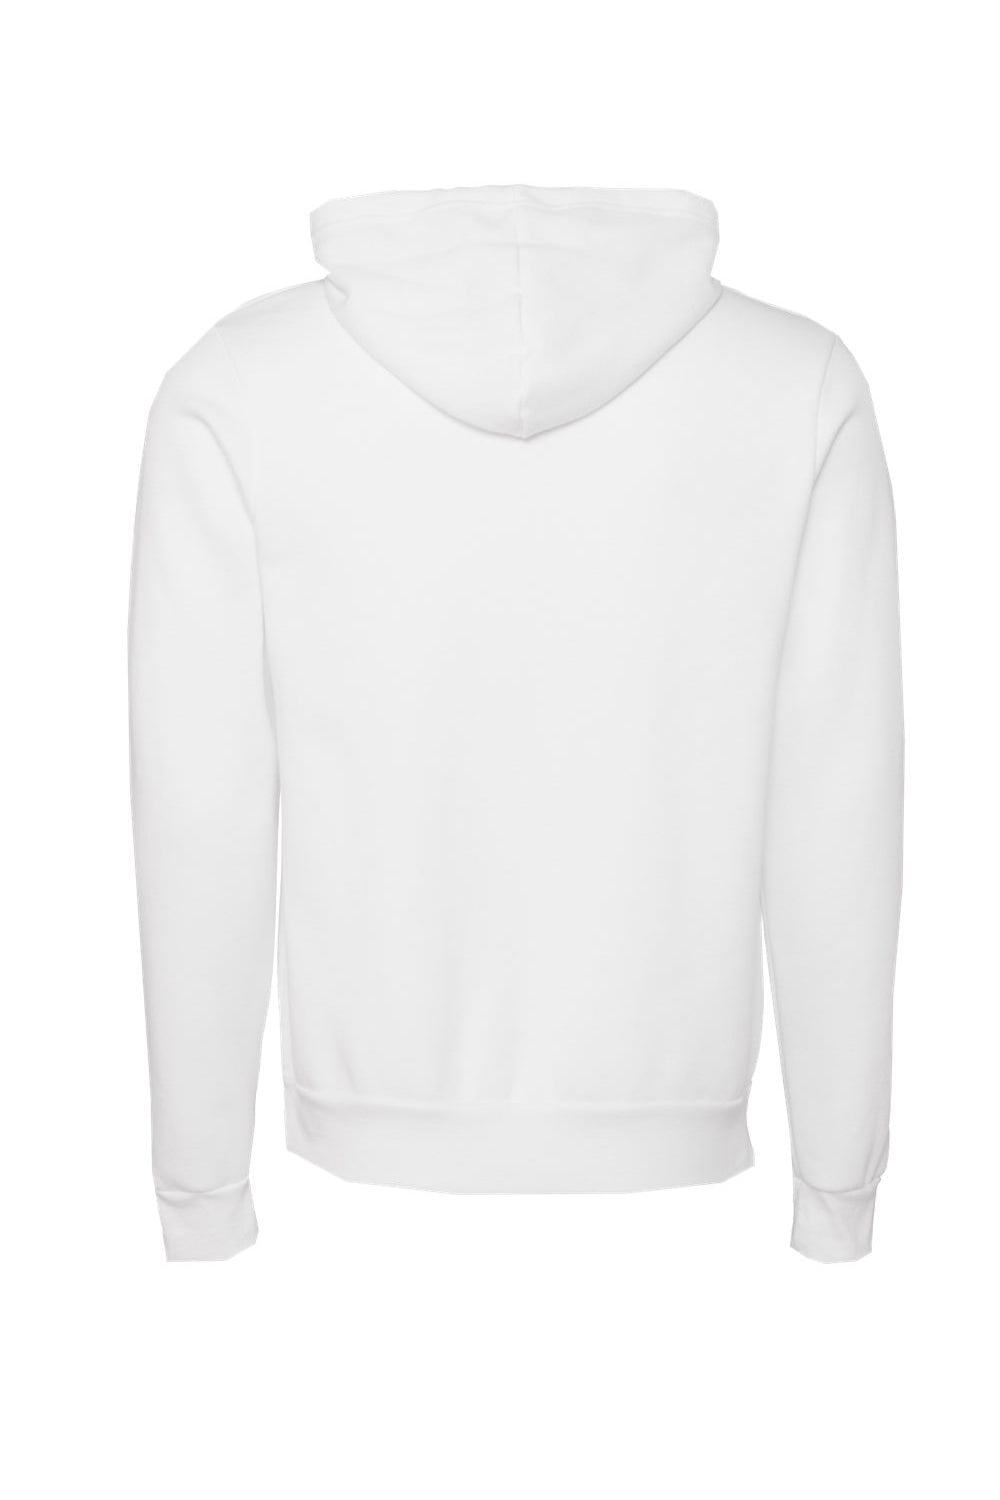 Bella + Canvas BC3719/3719 Mens Sponge Fleece Hooded Sweatshirt Hoodie DTG White Flat Back